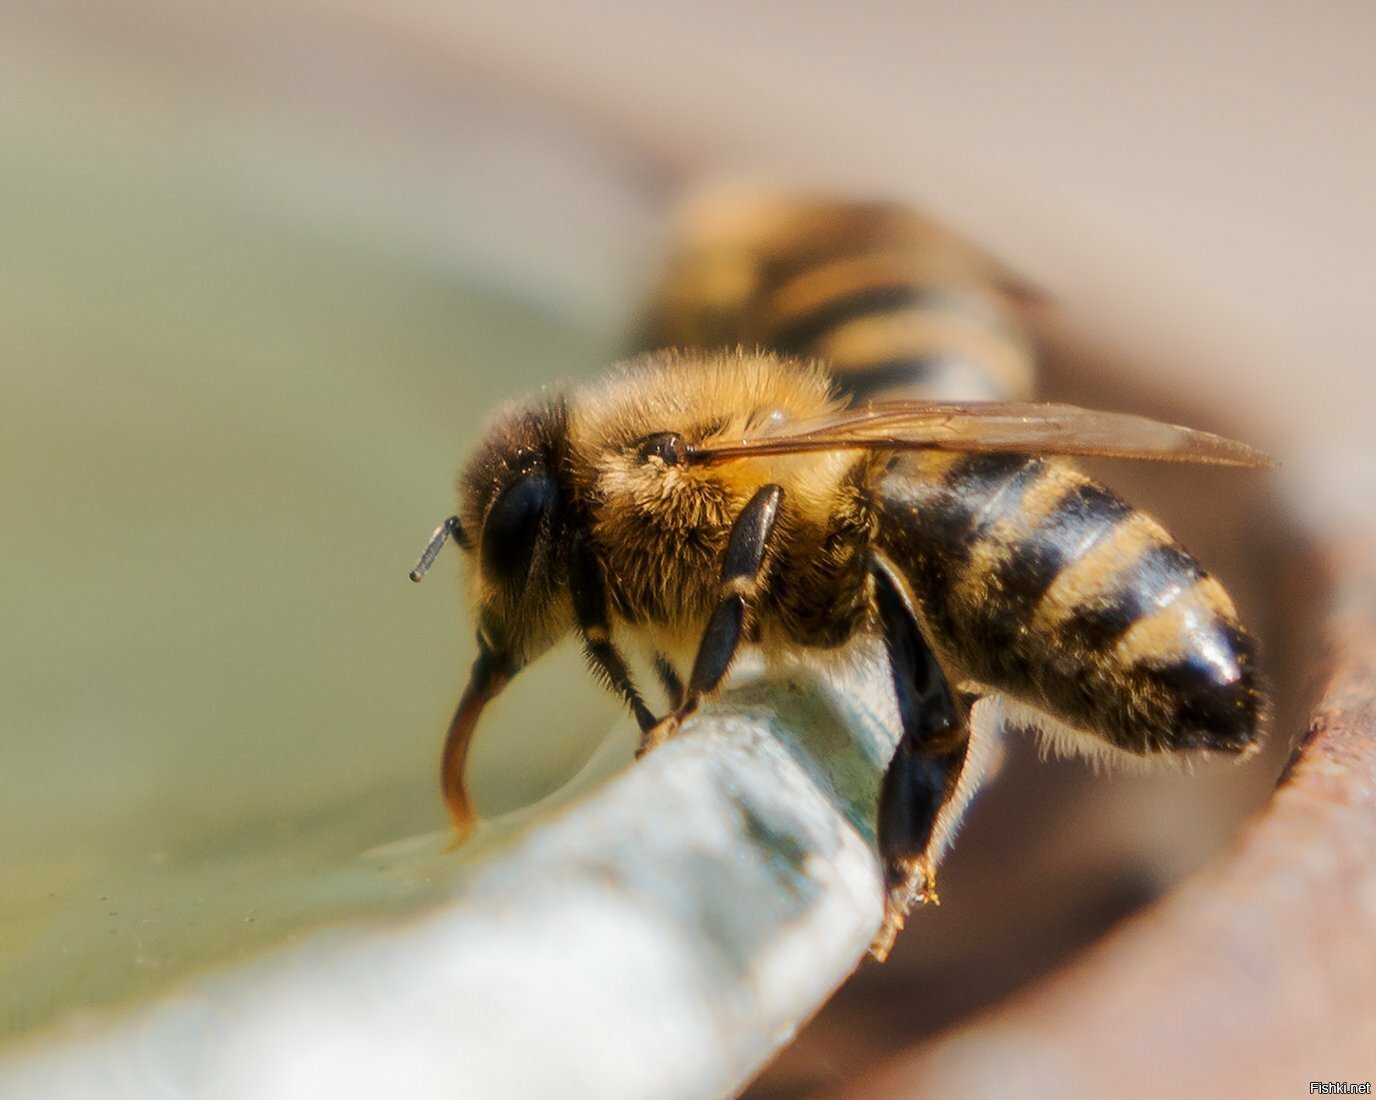 Присматриваю за пчелами (по просьбе), иногда фотографирую )) На фото пчелы-во...